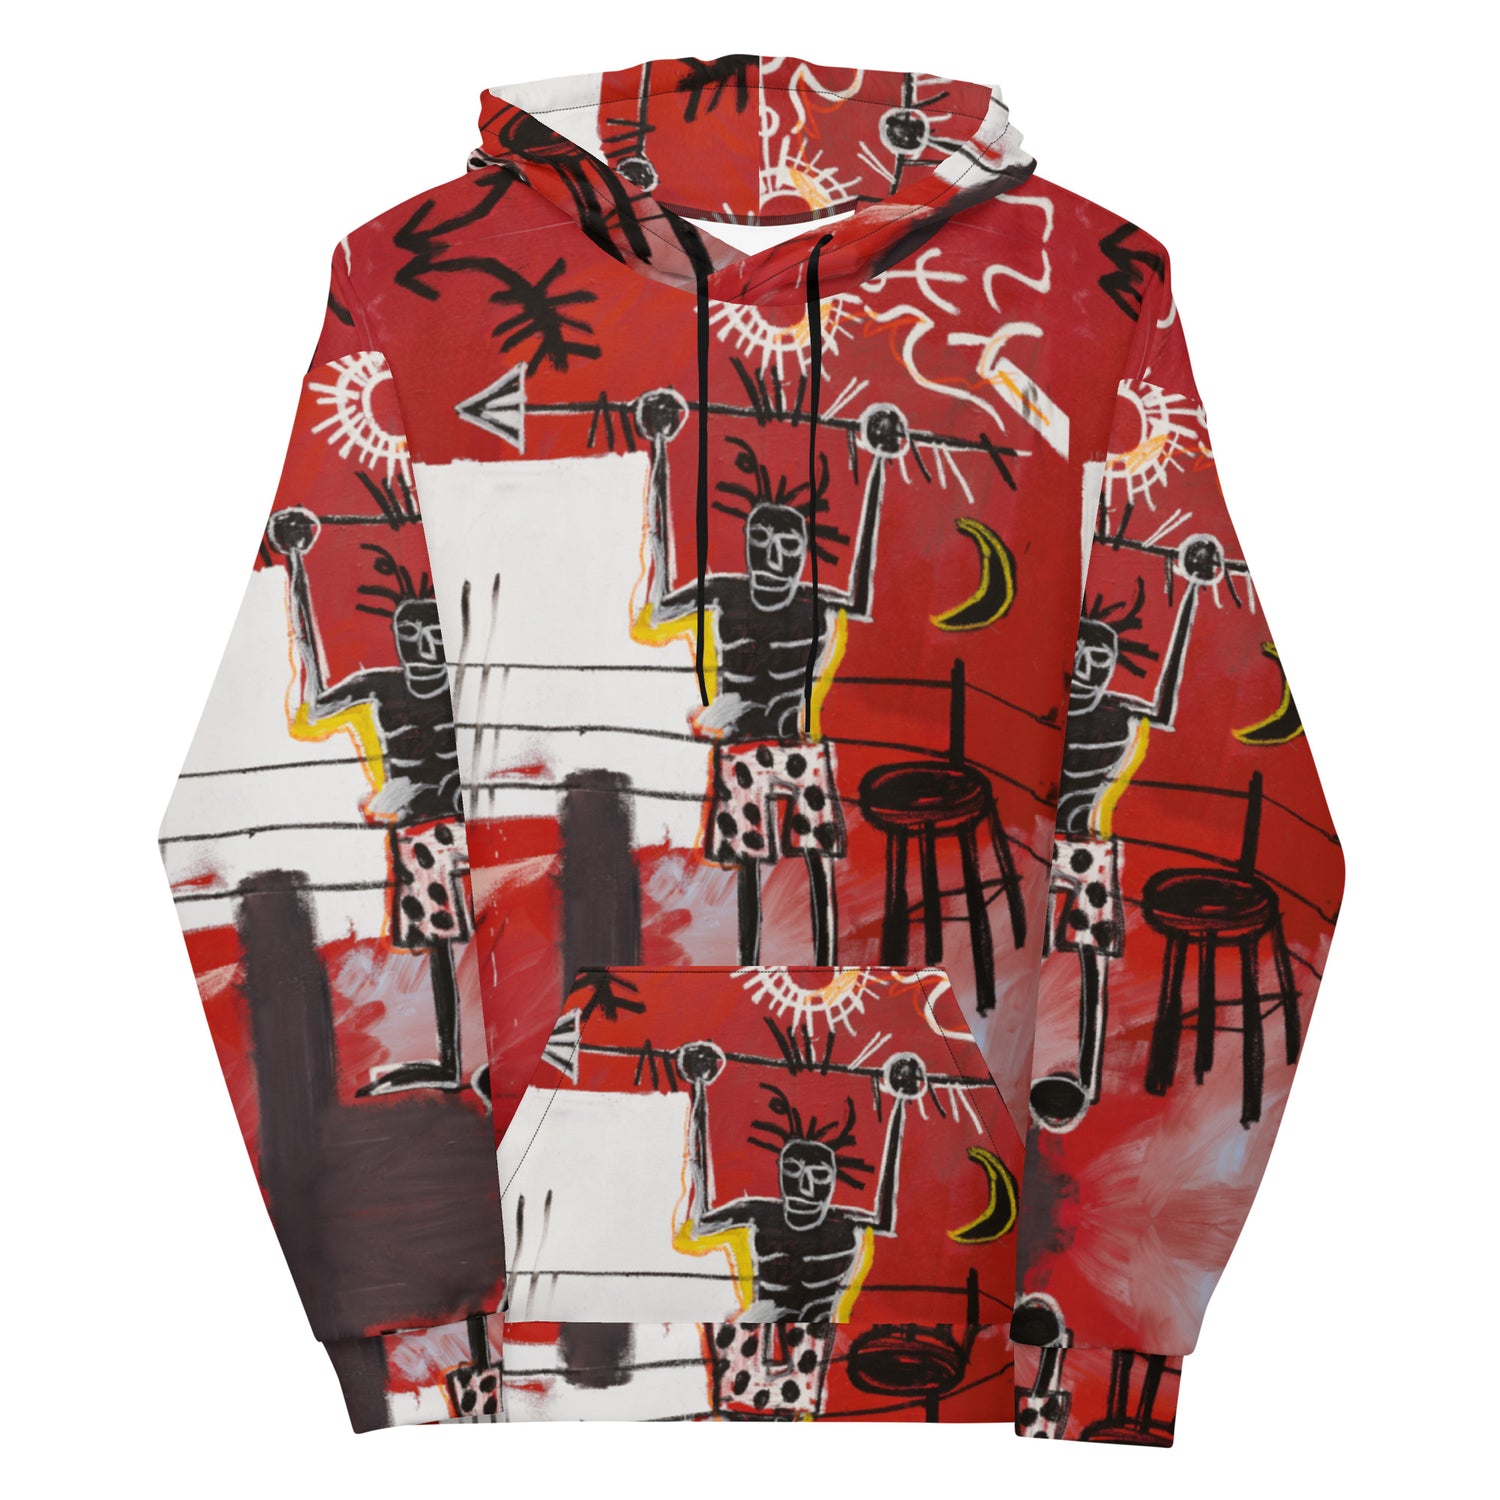 Jean-Michel Basquiat "The Ring" Artwork Printed Premium Streetwear Sweatshirt Hoodie Harajuku Graffiti